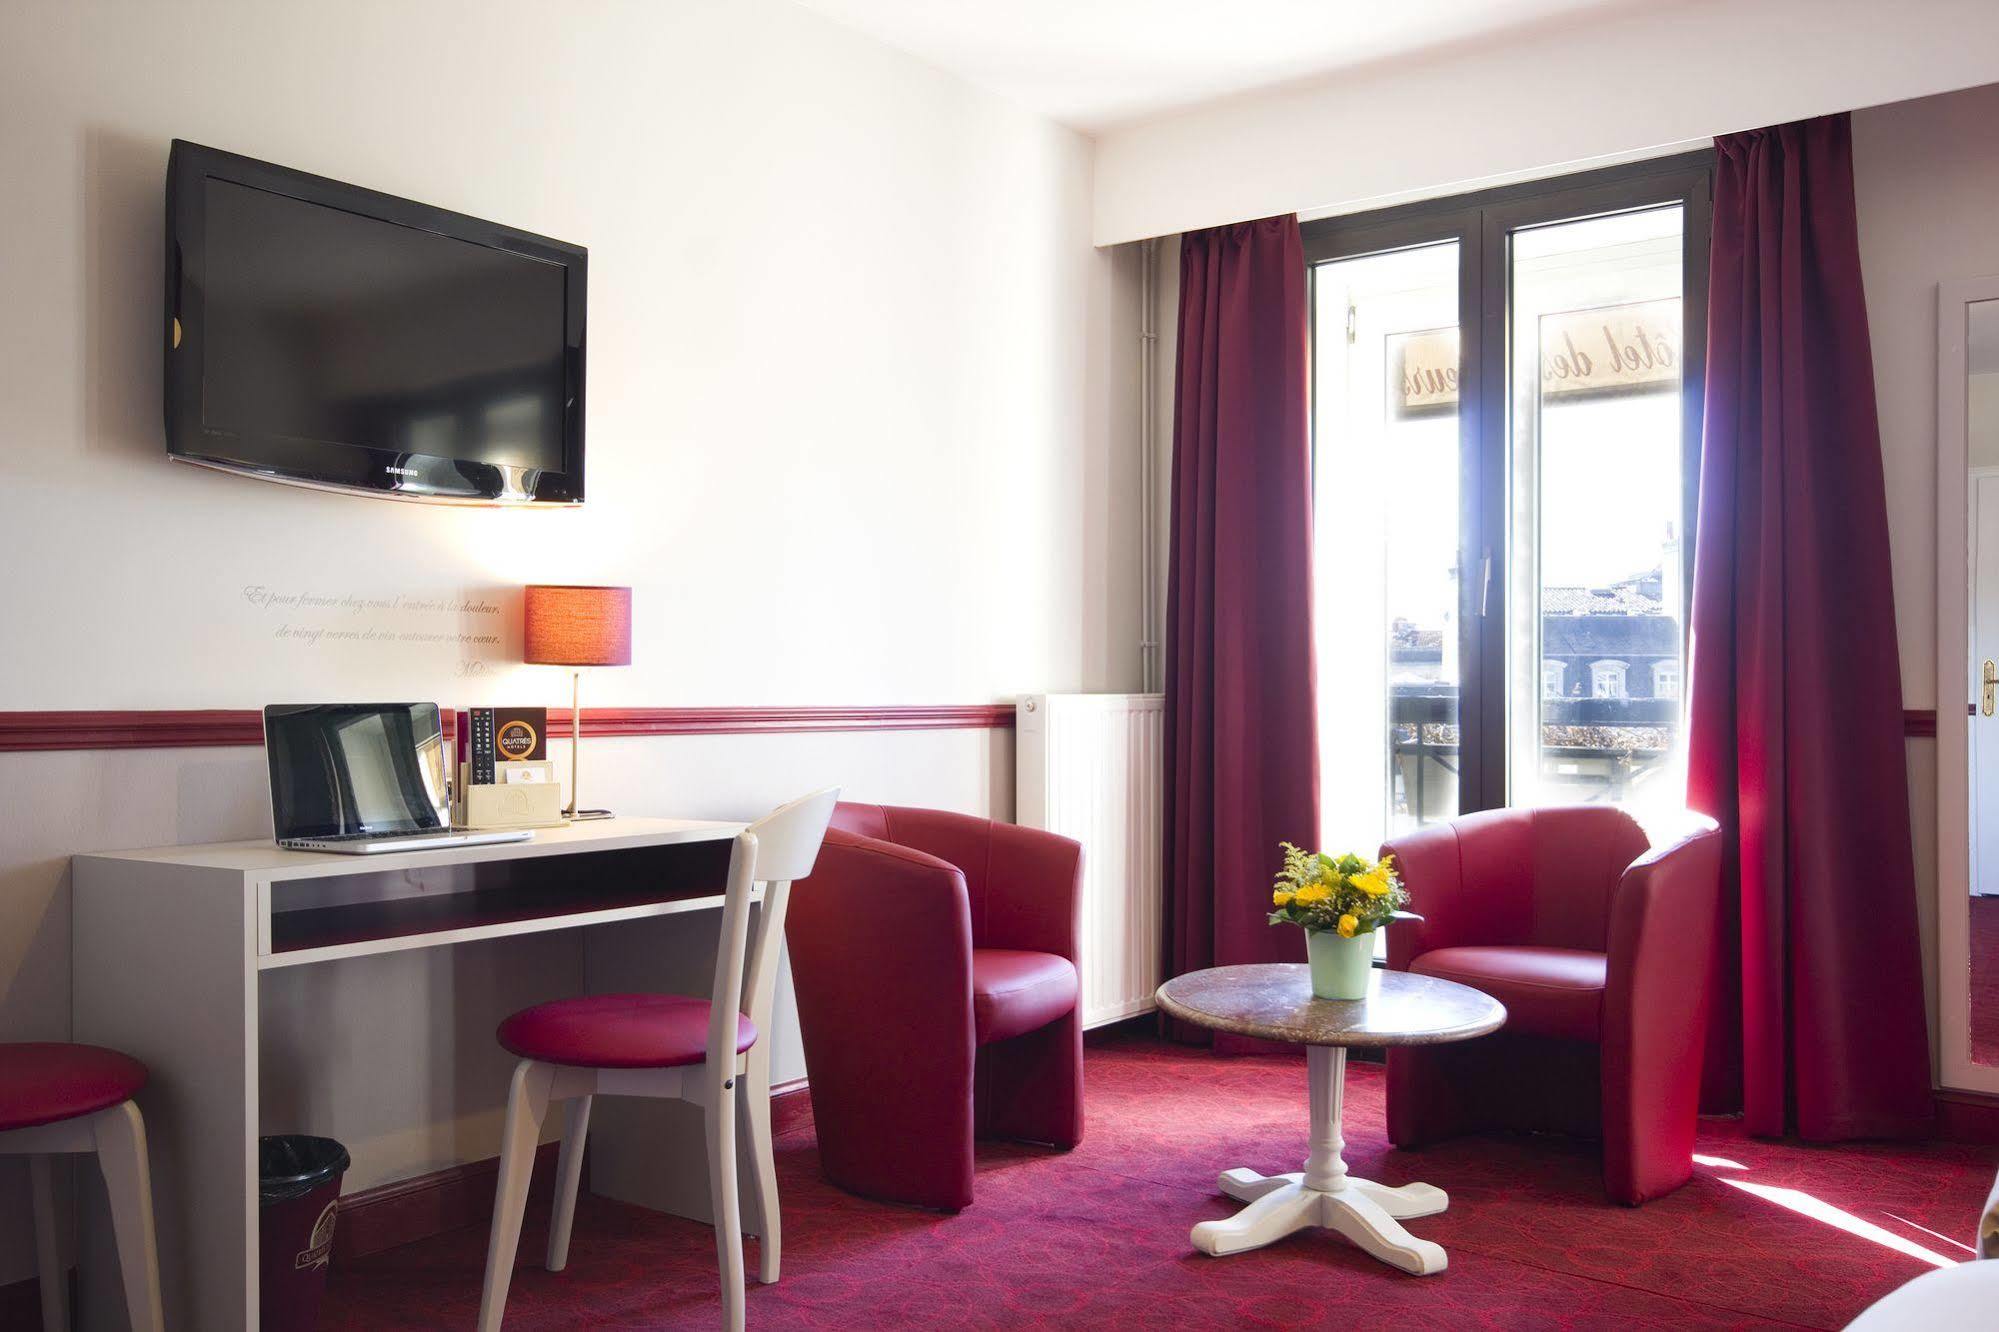 Hotel Des 4 Soeurs Bordeaux Exteriér fotografie